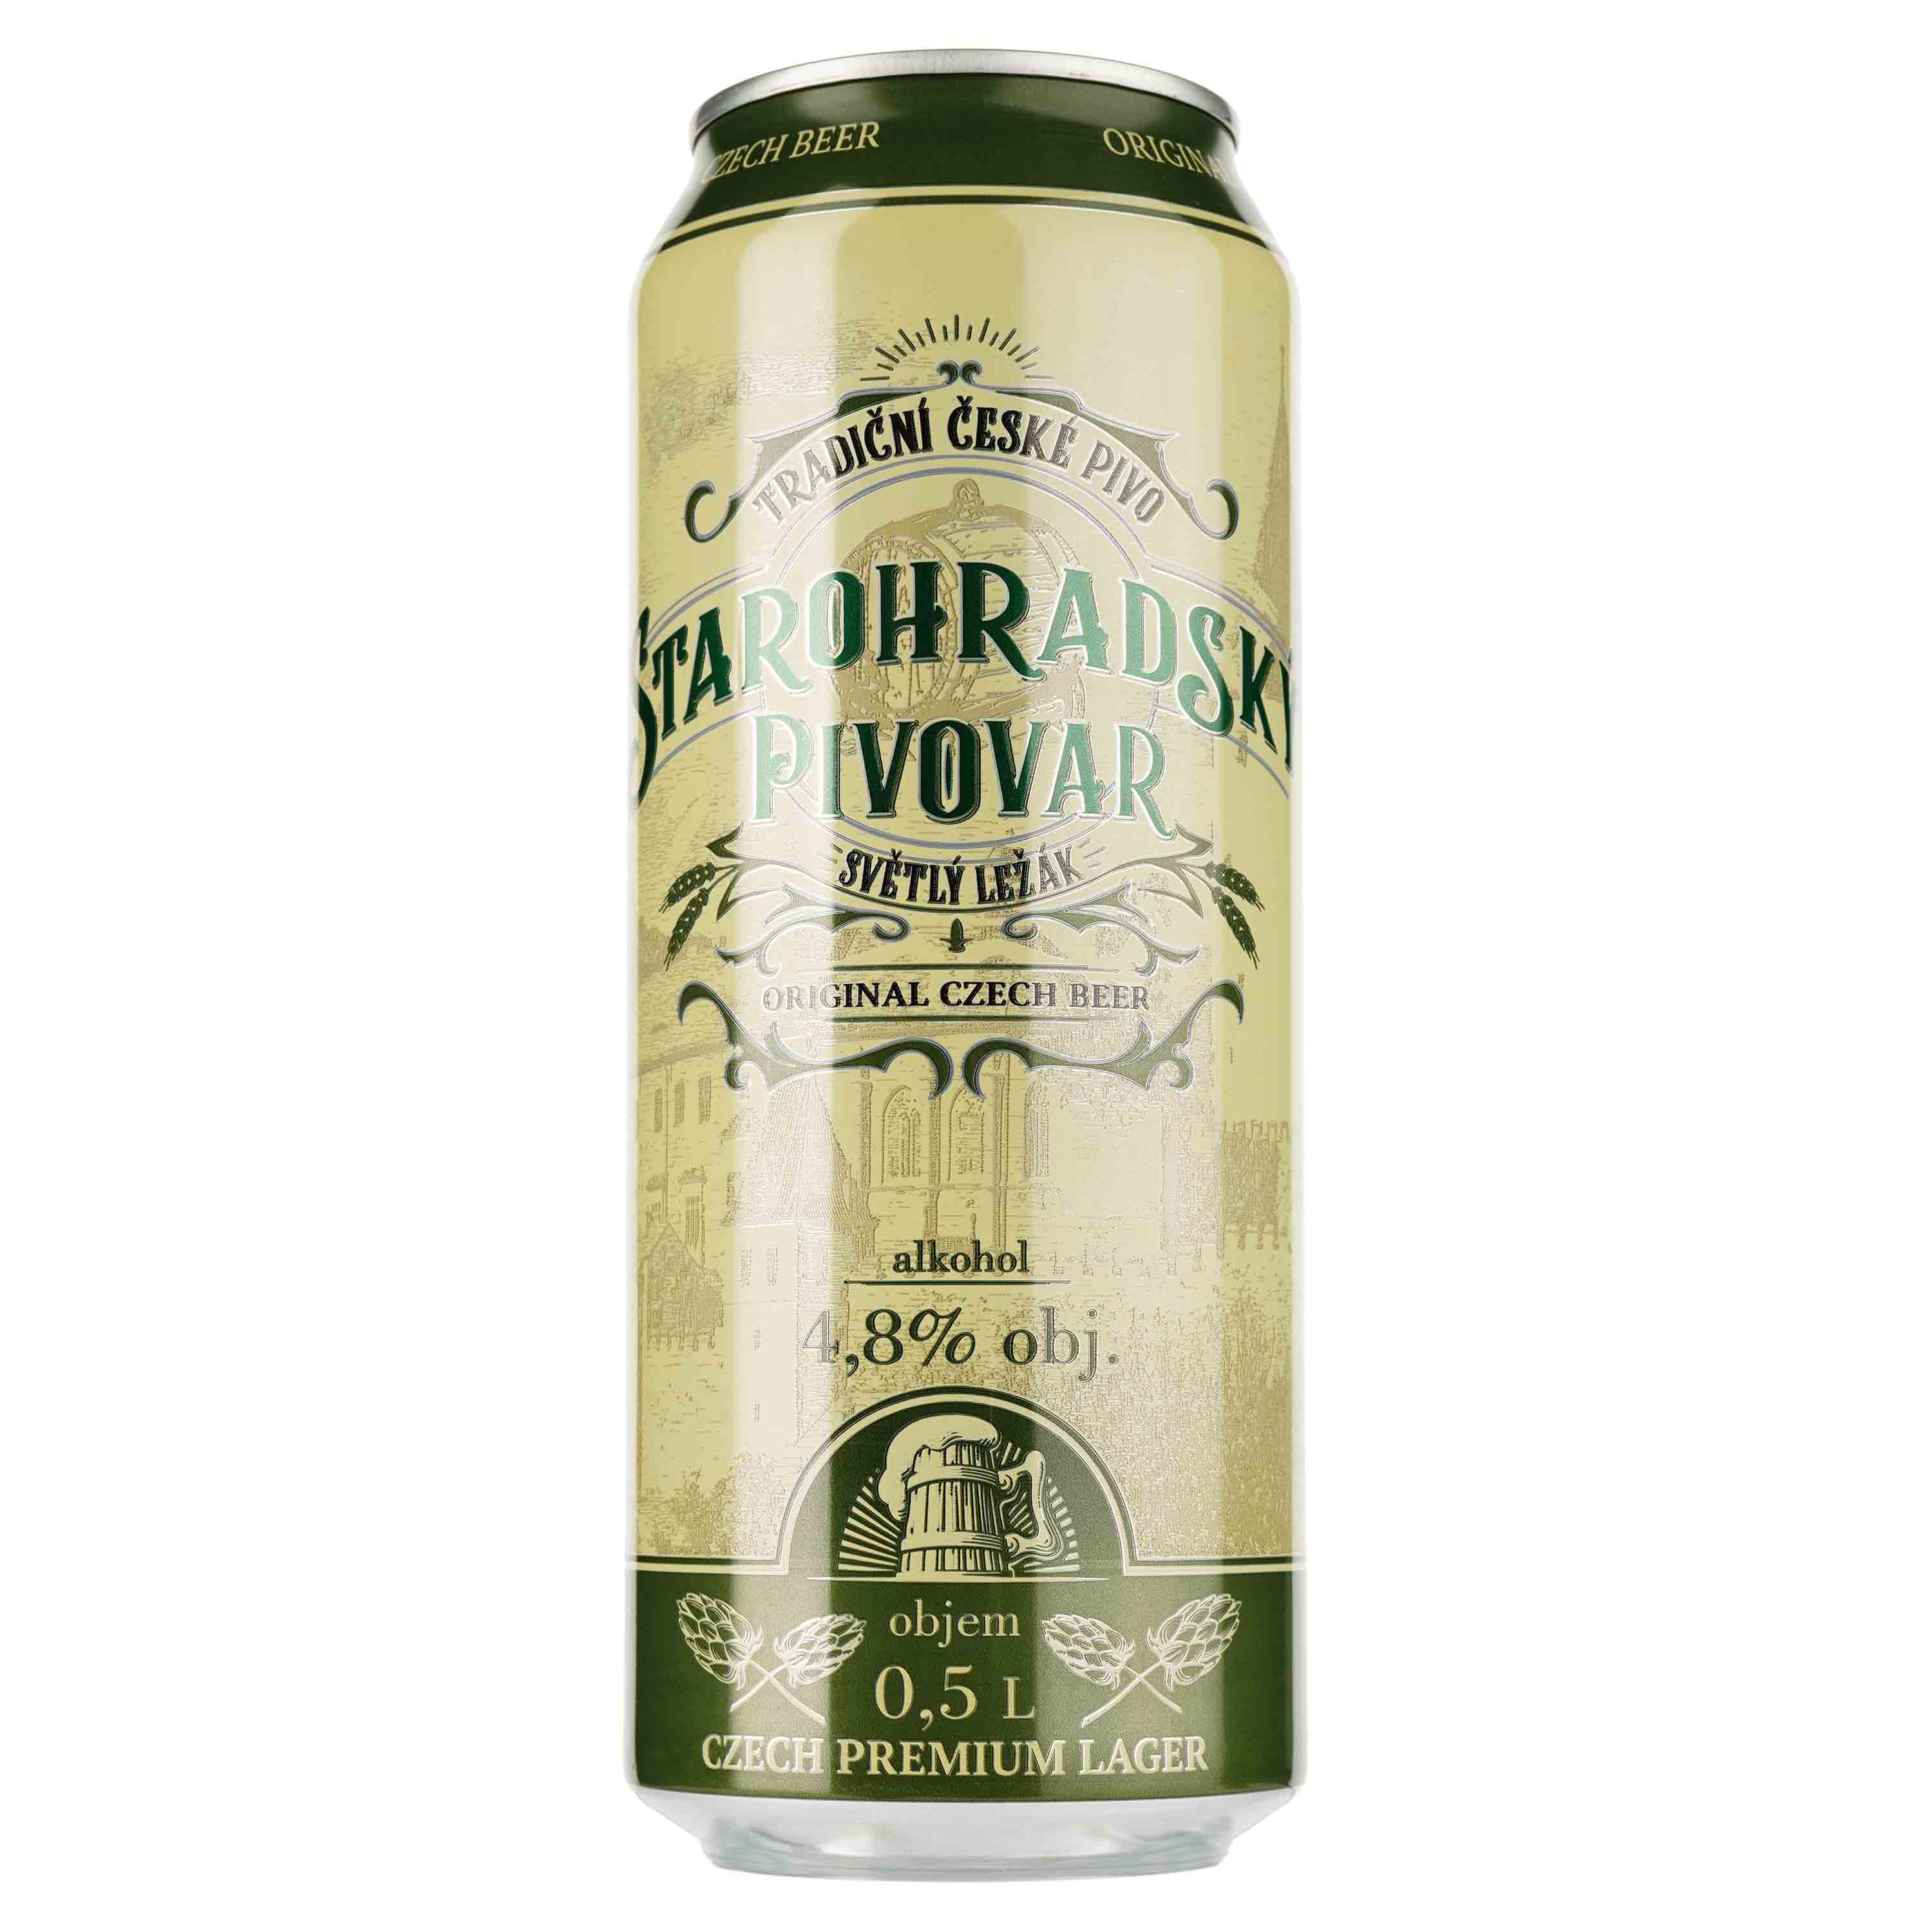 Пиво Starohradsky pivovar, светлое, фильтрованное, 4,8%, ж/б, 0,5 л - фото 1